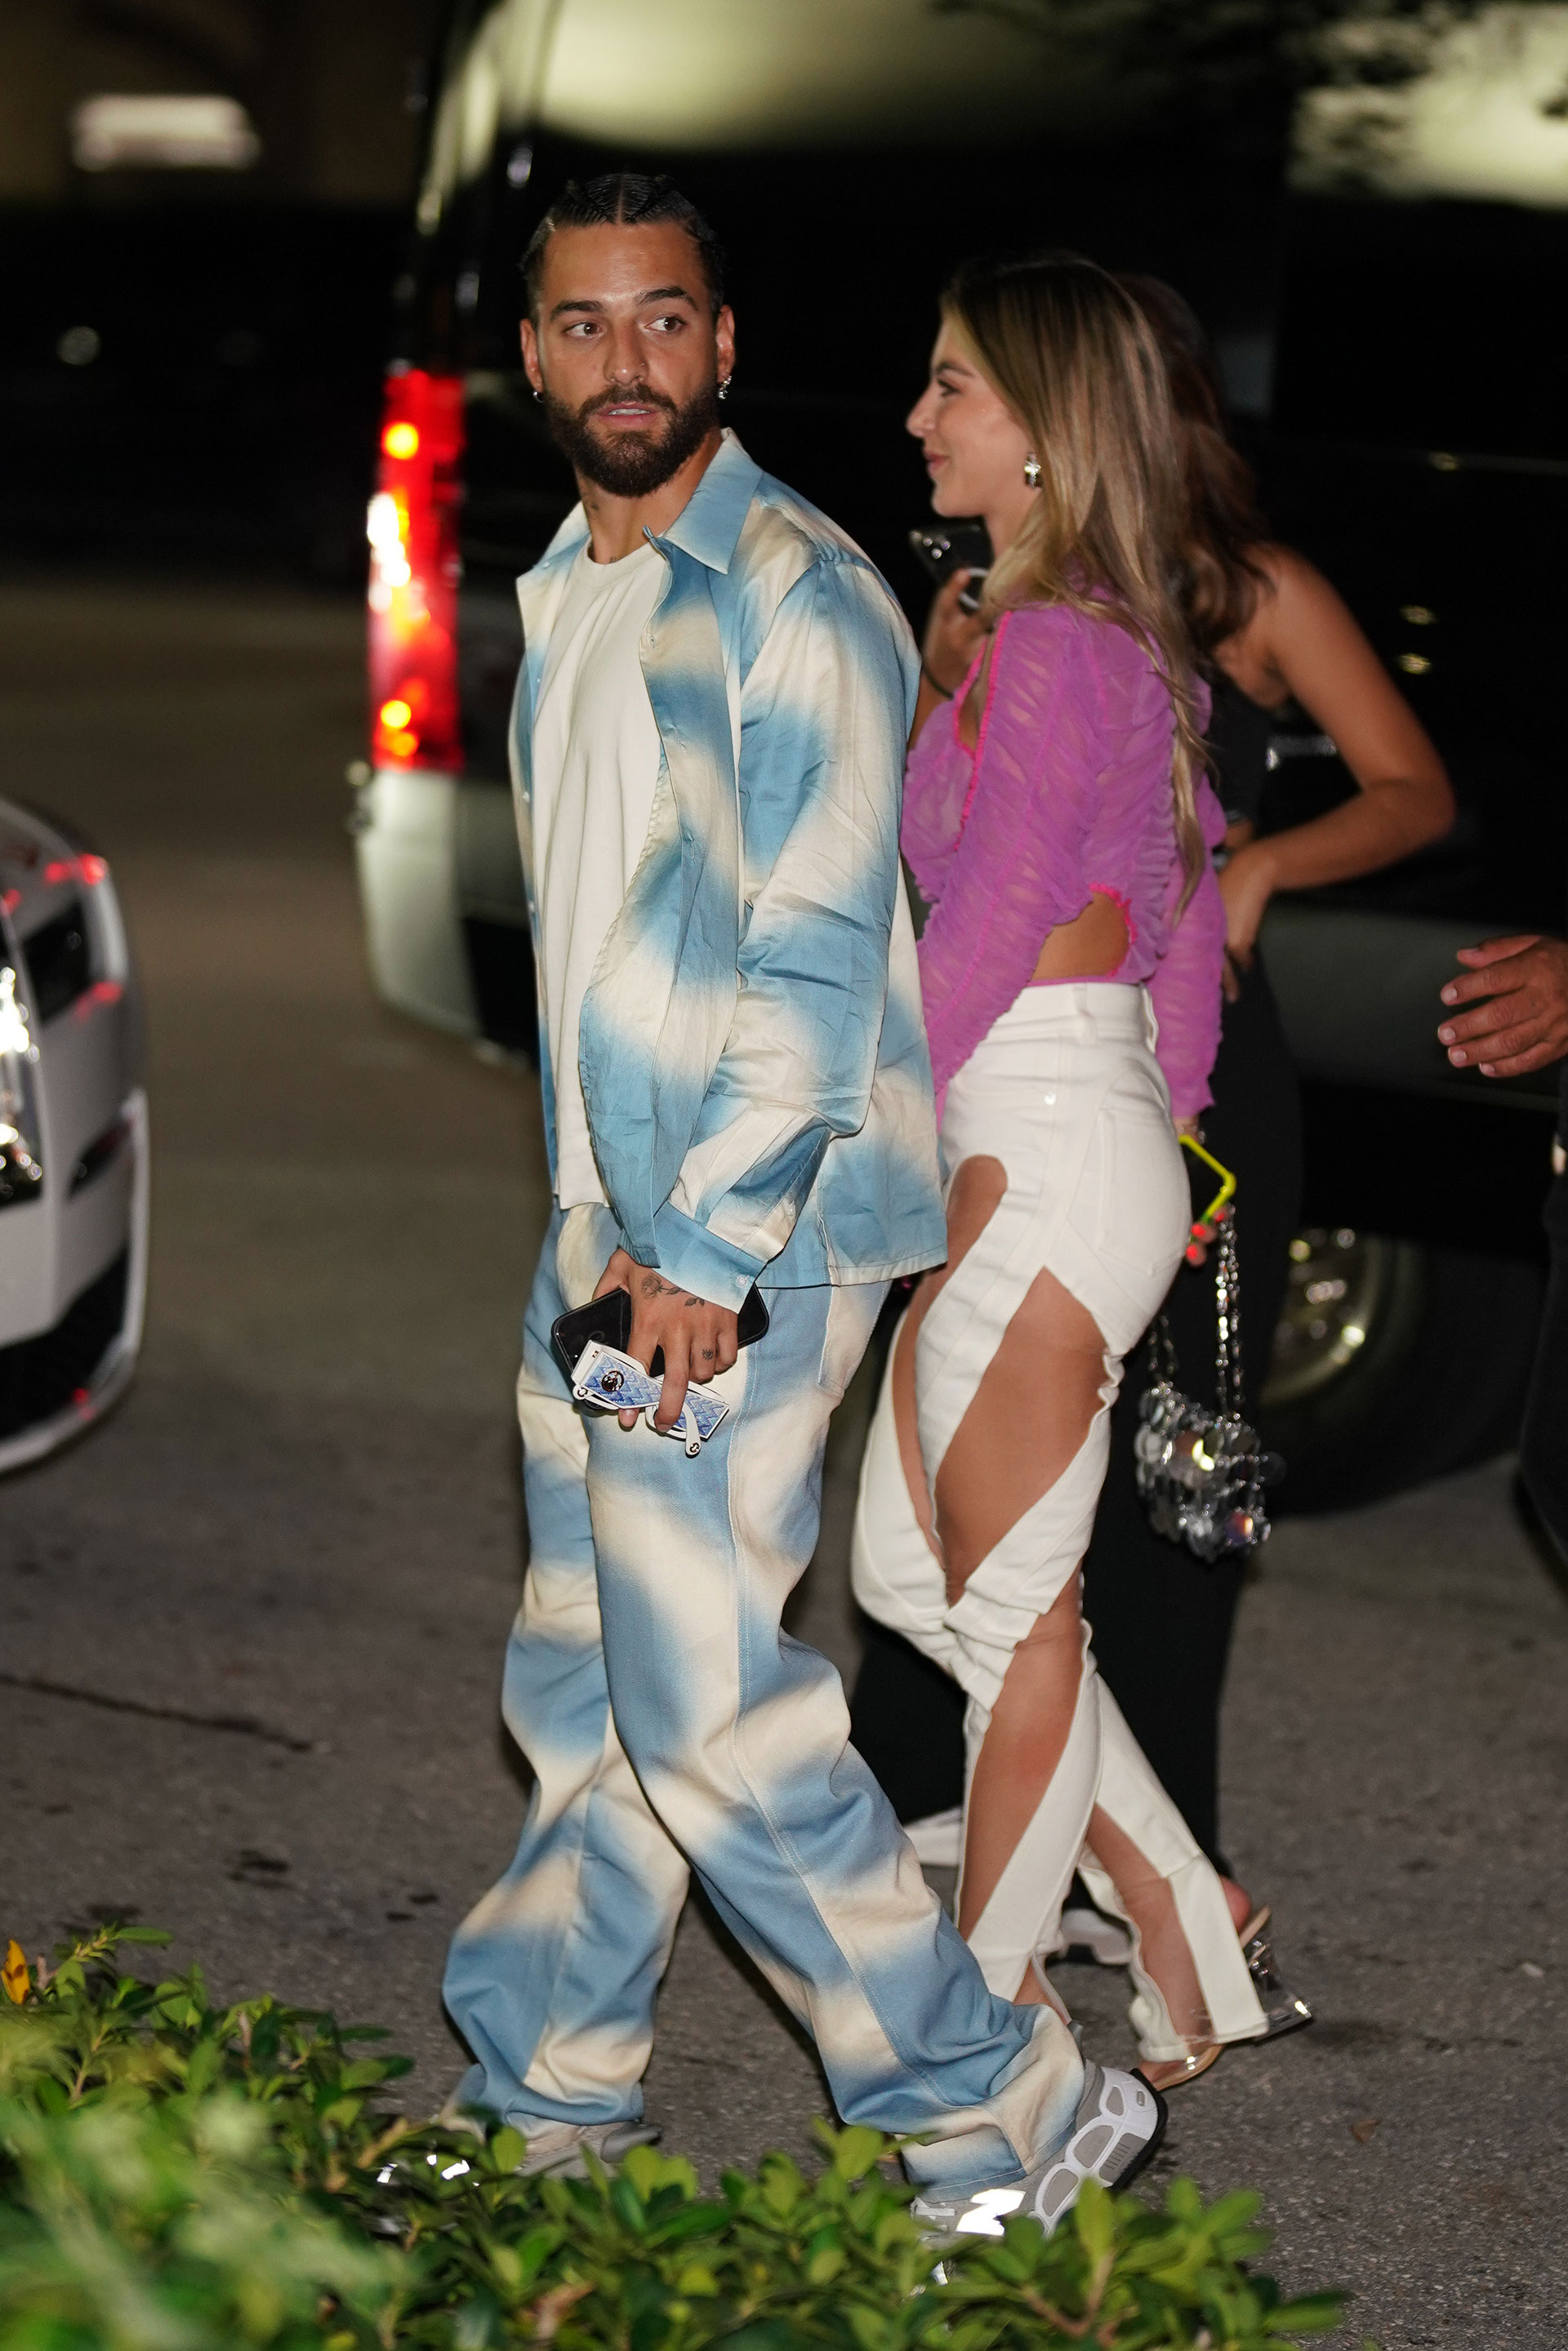 La estrella del pop Maluma y su novia Susana Gomez fueron vistos en Papi Steak en Miami Beach, Florida. El cantante usó una remera blanca debajo de una camisa azul y blanca de gran tamaño y pantalones haciendo juego, mientras que Susana usó un top morado y jeans blancos rotos